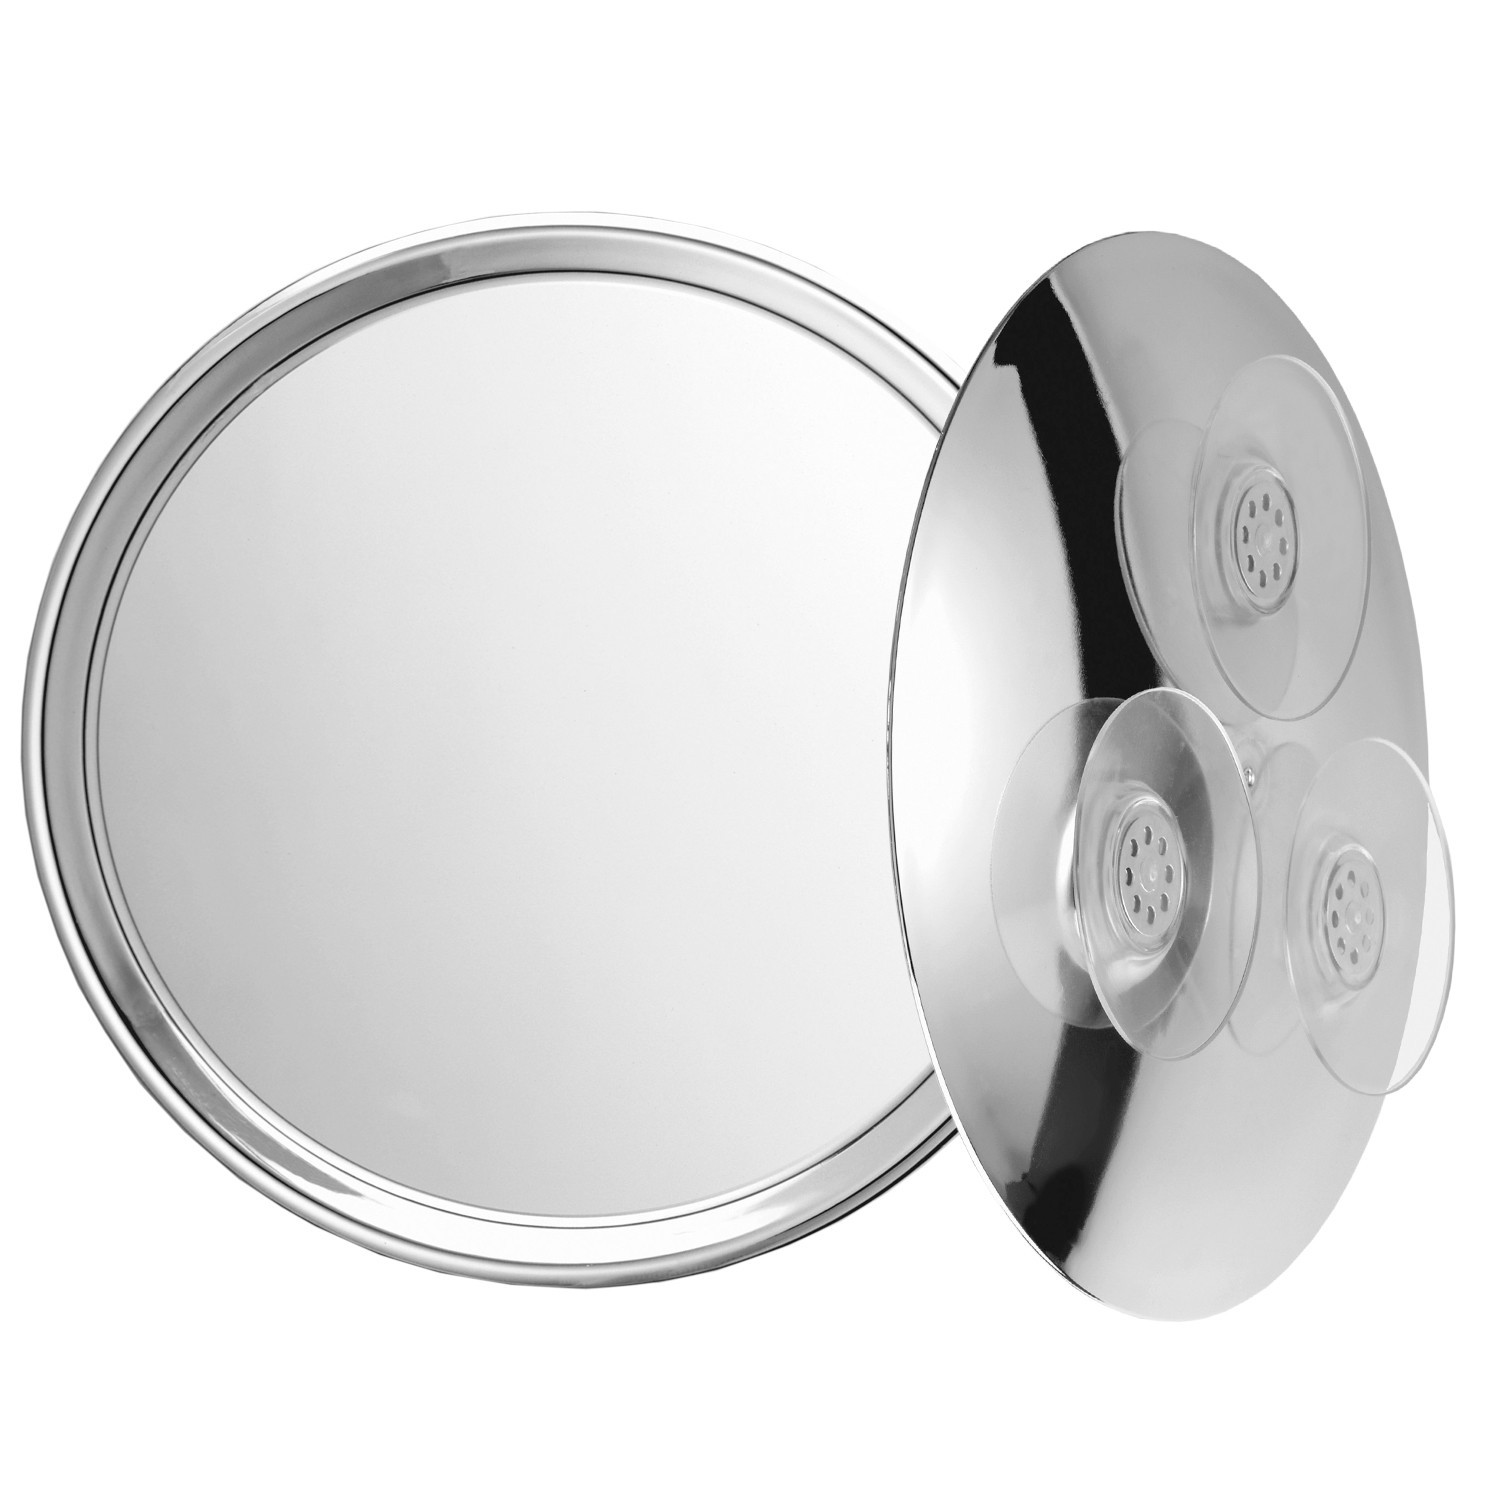 Specchio ingranditore cromato con 3 ventose. Ingrandimento x3 Ø23cm.